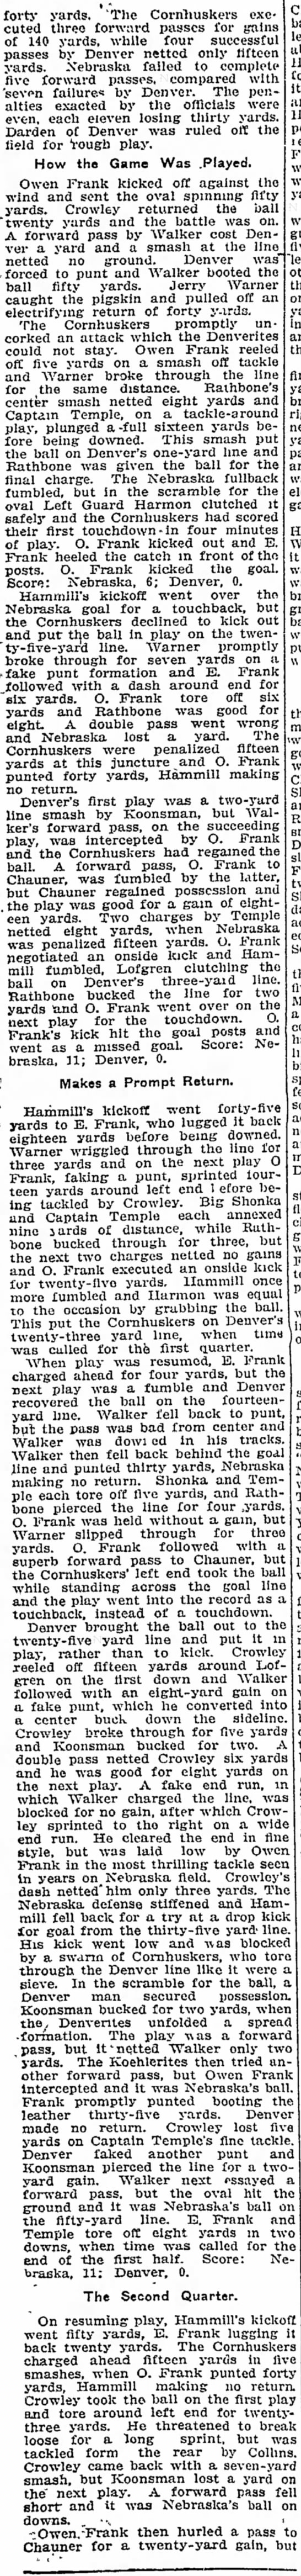 1910 Nebraska-Denver football, part 2 - 